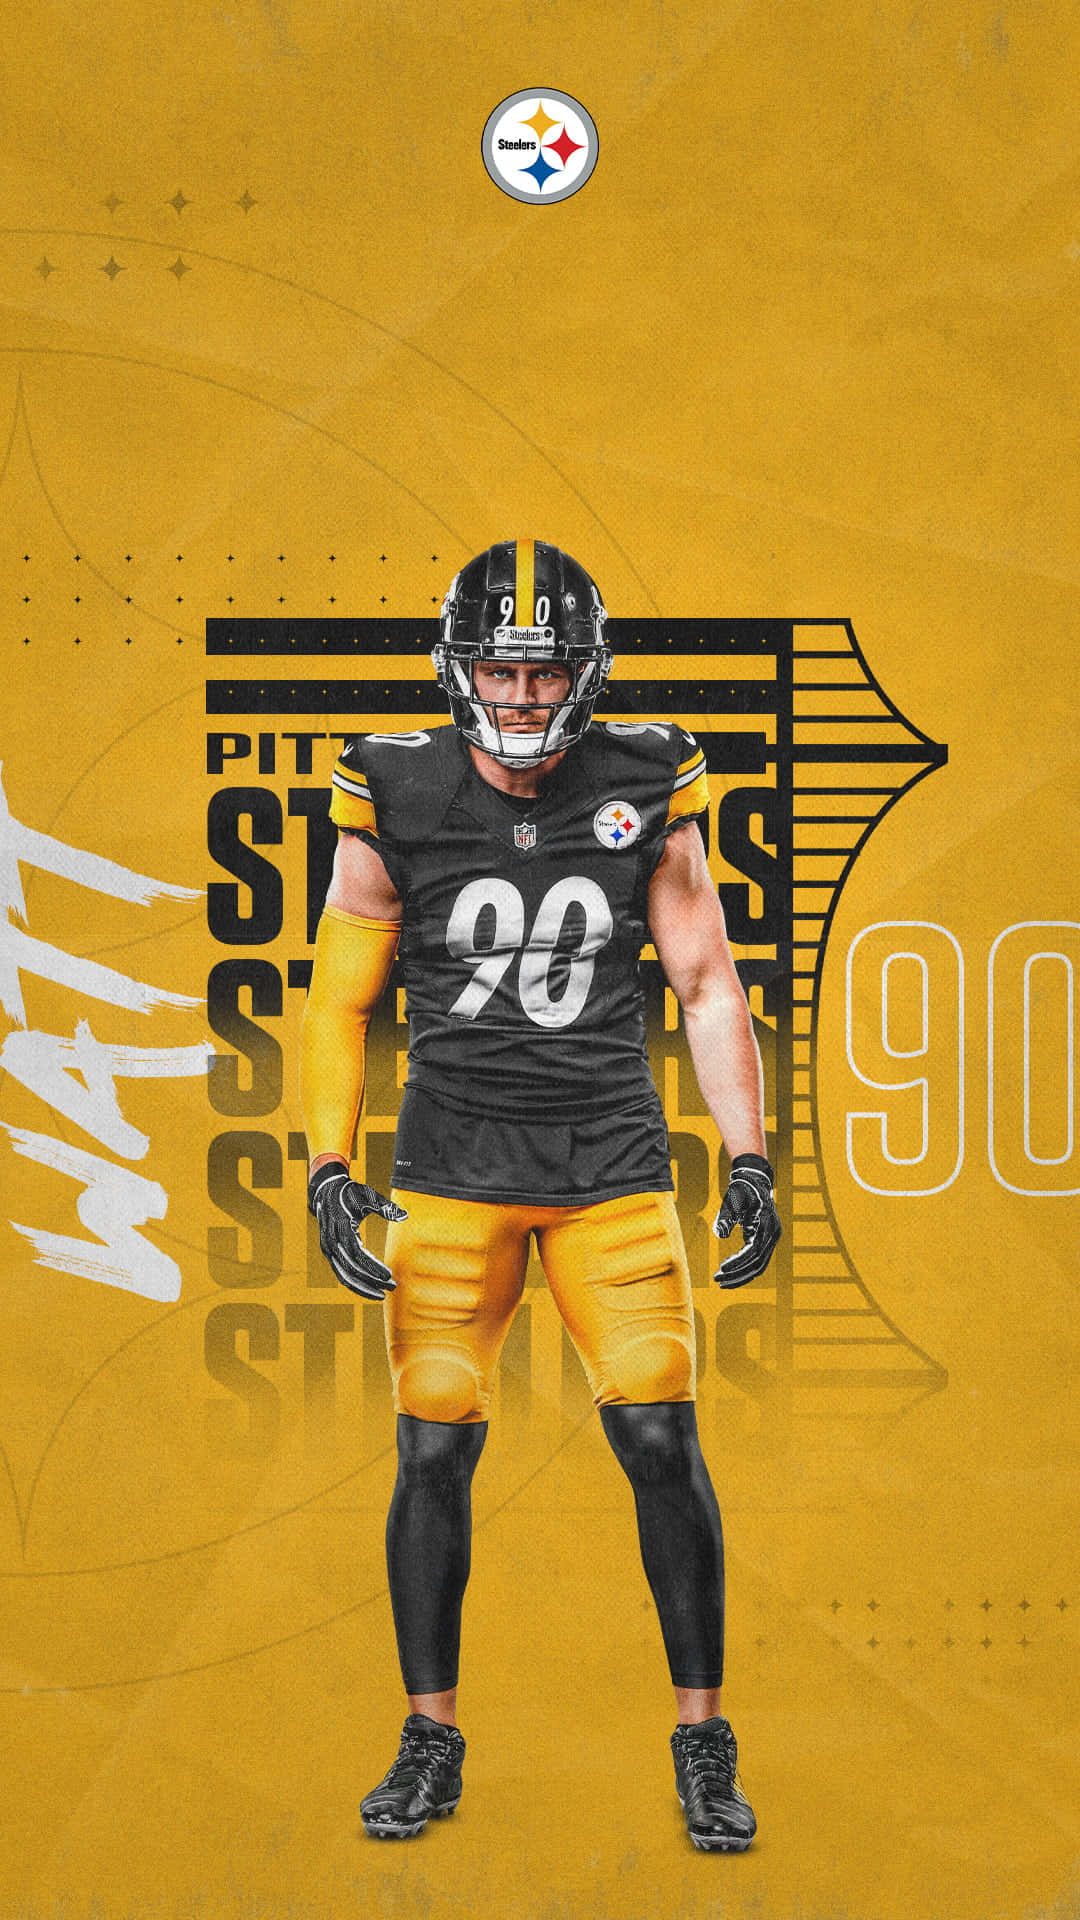 100+] Steelers Phone Wallpapers